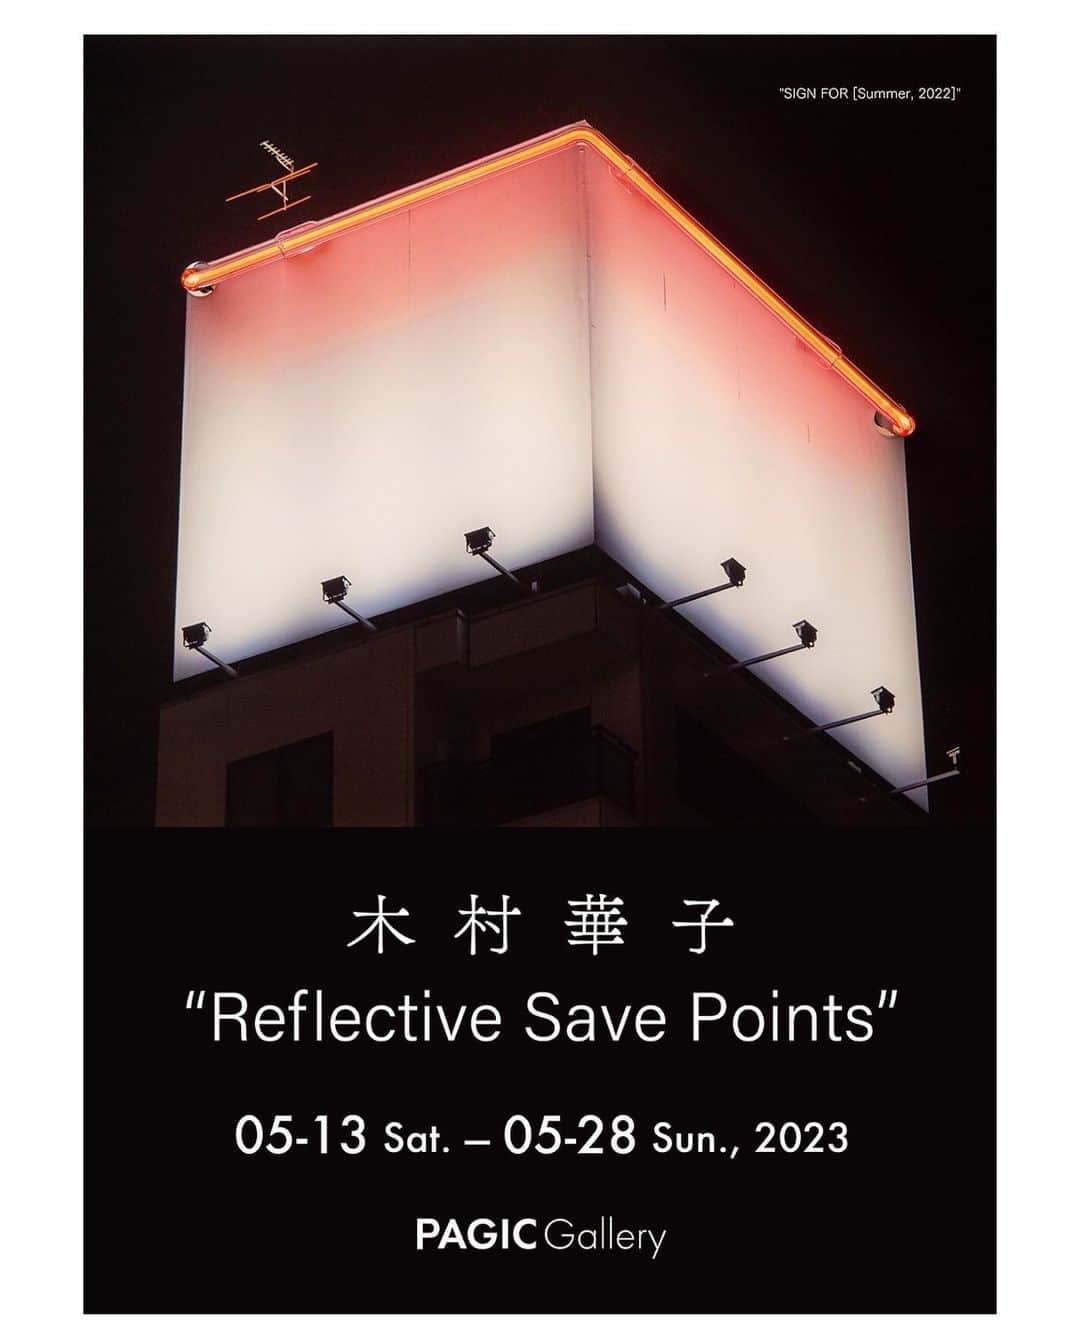 木村華子のインスタグラム：「【！東京にて個展開催のお知らせ！】  5/8から初台のPAGIC Gallery @pagicgallery で個展を開催します。  @hanako_kimura solo show  "Reflective Save Point" 5/13-5/28 12:00~19:00  水&木曜休廊  入場無料  DMに使用してもらったのは青い空&青いネオンではなく、夜空&赤ネオンの新作。(青い方も出します) その他、犬の貯金箱のシリーズ"My Brand New Shit"からも新作を出します。 それらが互いを表面に映し合い、共鳴する空間になることを目指しています。 木村華子は5/13、14、27、28は終日在廊予定です。 ぜひお立ち寄りください。  #Repost @pagicgallery with @use.repost ・・・ [5月の展覧会] 木村華子 個展 “Reflective Save Points” 05-13 Sat. — 05-28, Sun., 2023 PAGIC Gallery  本展では木村華子の複数のシリーズを同じ空間で展示します。 アイコニックなシリーズ“SIGN FOR [ ]”のほか、青いネオンライトと青空ではなく赤いネオンライトと夜空を扱いさらに発展させた”SIGNS FOR [Summer, 2022]”と、現代アーティストとしてのアイデンティティを表現した“My Brand New Shit”シリーズの新作を発表します。 木村が発表してきた作品の多くは、滑らかな質感を持ちます。アクリルやクロームといった表層にはさながら鏡のように周りが映り込み、作品同士が互いに影響し合うのです。 さらに鑑賞者をその表面に取り込むことで、‘見ている／見られている’グレーゾーンへと誘います。  休廊：　水・木曜日 作家在廊予定：　5月13日・14日・20日・21日  https://pagicgallery.com/rsp/  #pagicgallery #木村華子 #hanakokimura   #コンテンポラリーアート #contemporaryart  #初台 #西新宿 #参宮橋 #渋谷区 #東京 #Tokyo #日本 #shibuya #hatsudai #artgallery」